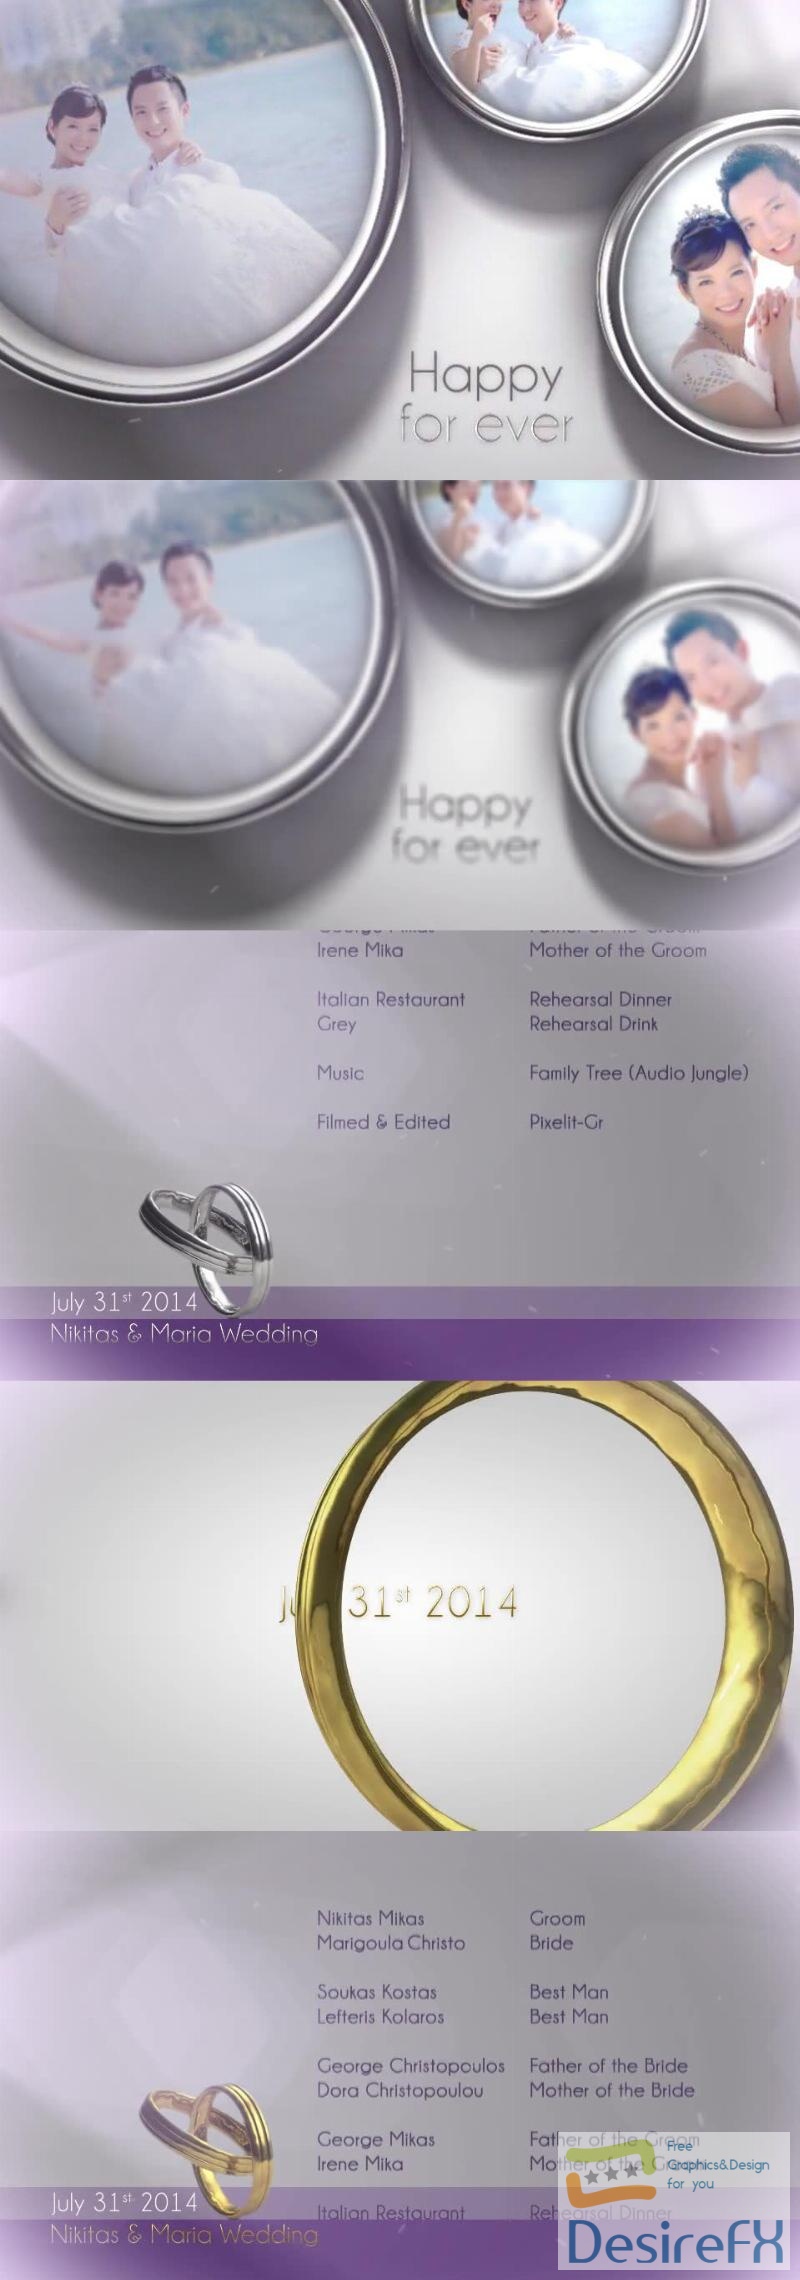 Videohive Wedding Rings 8521863